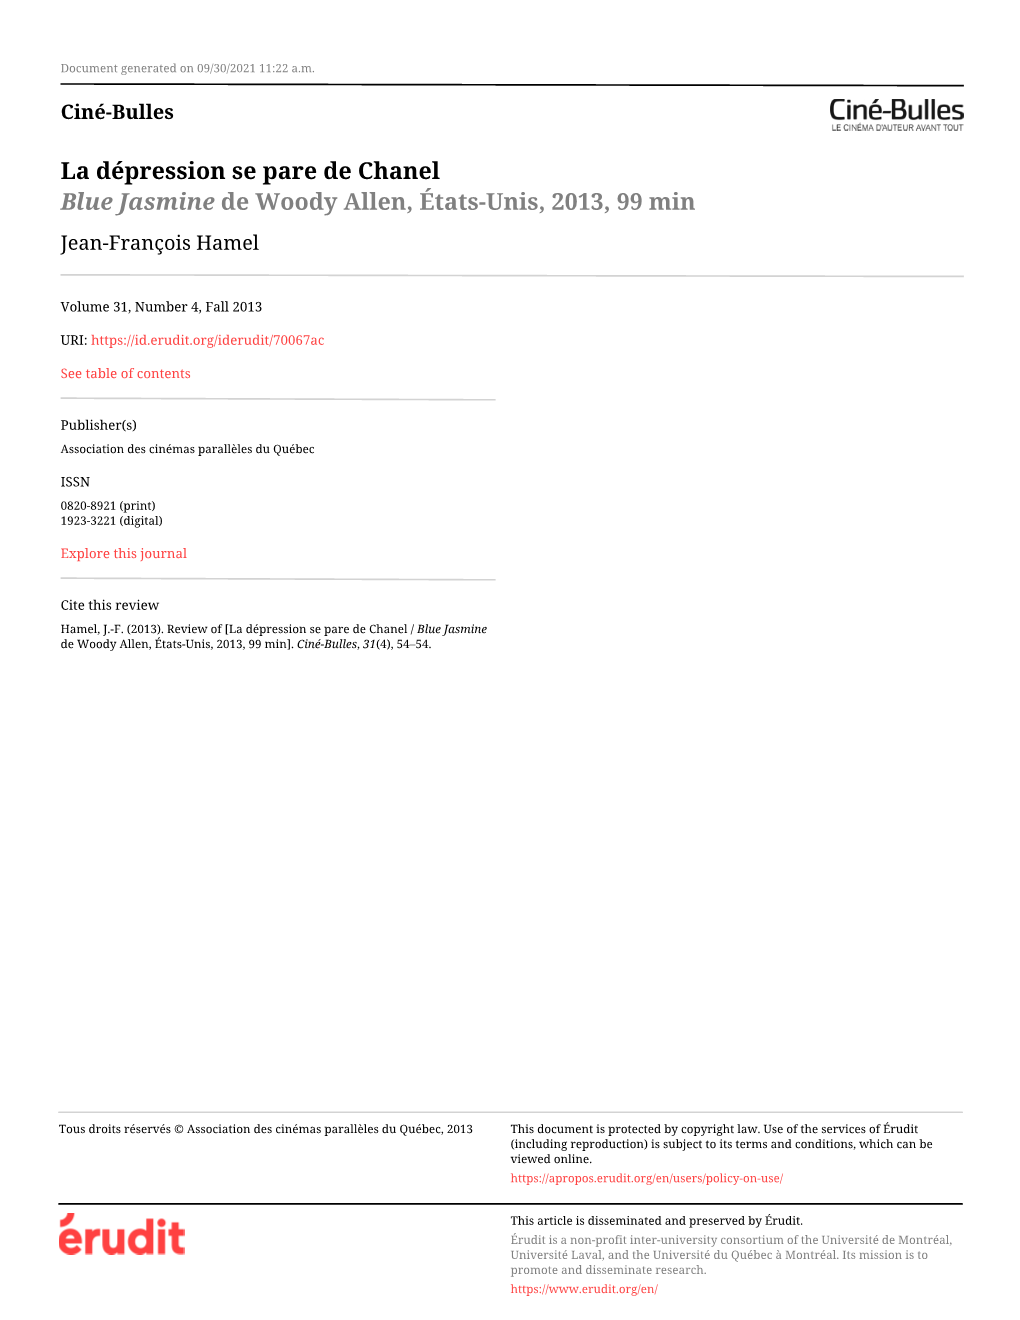 La Dépression Se Pare De Chanel / Blue Jasmine De Woody Allen, États-Unis, 2013, 99 Min]